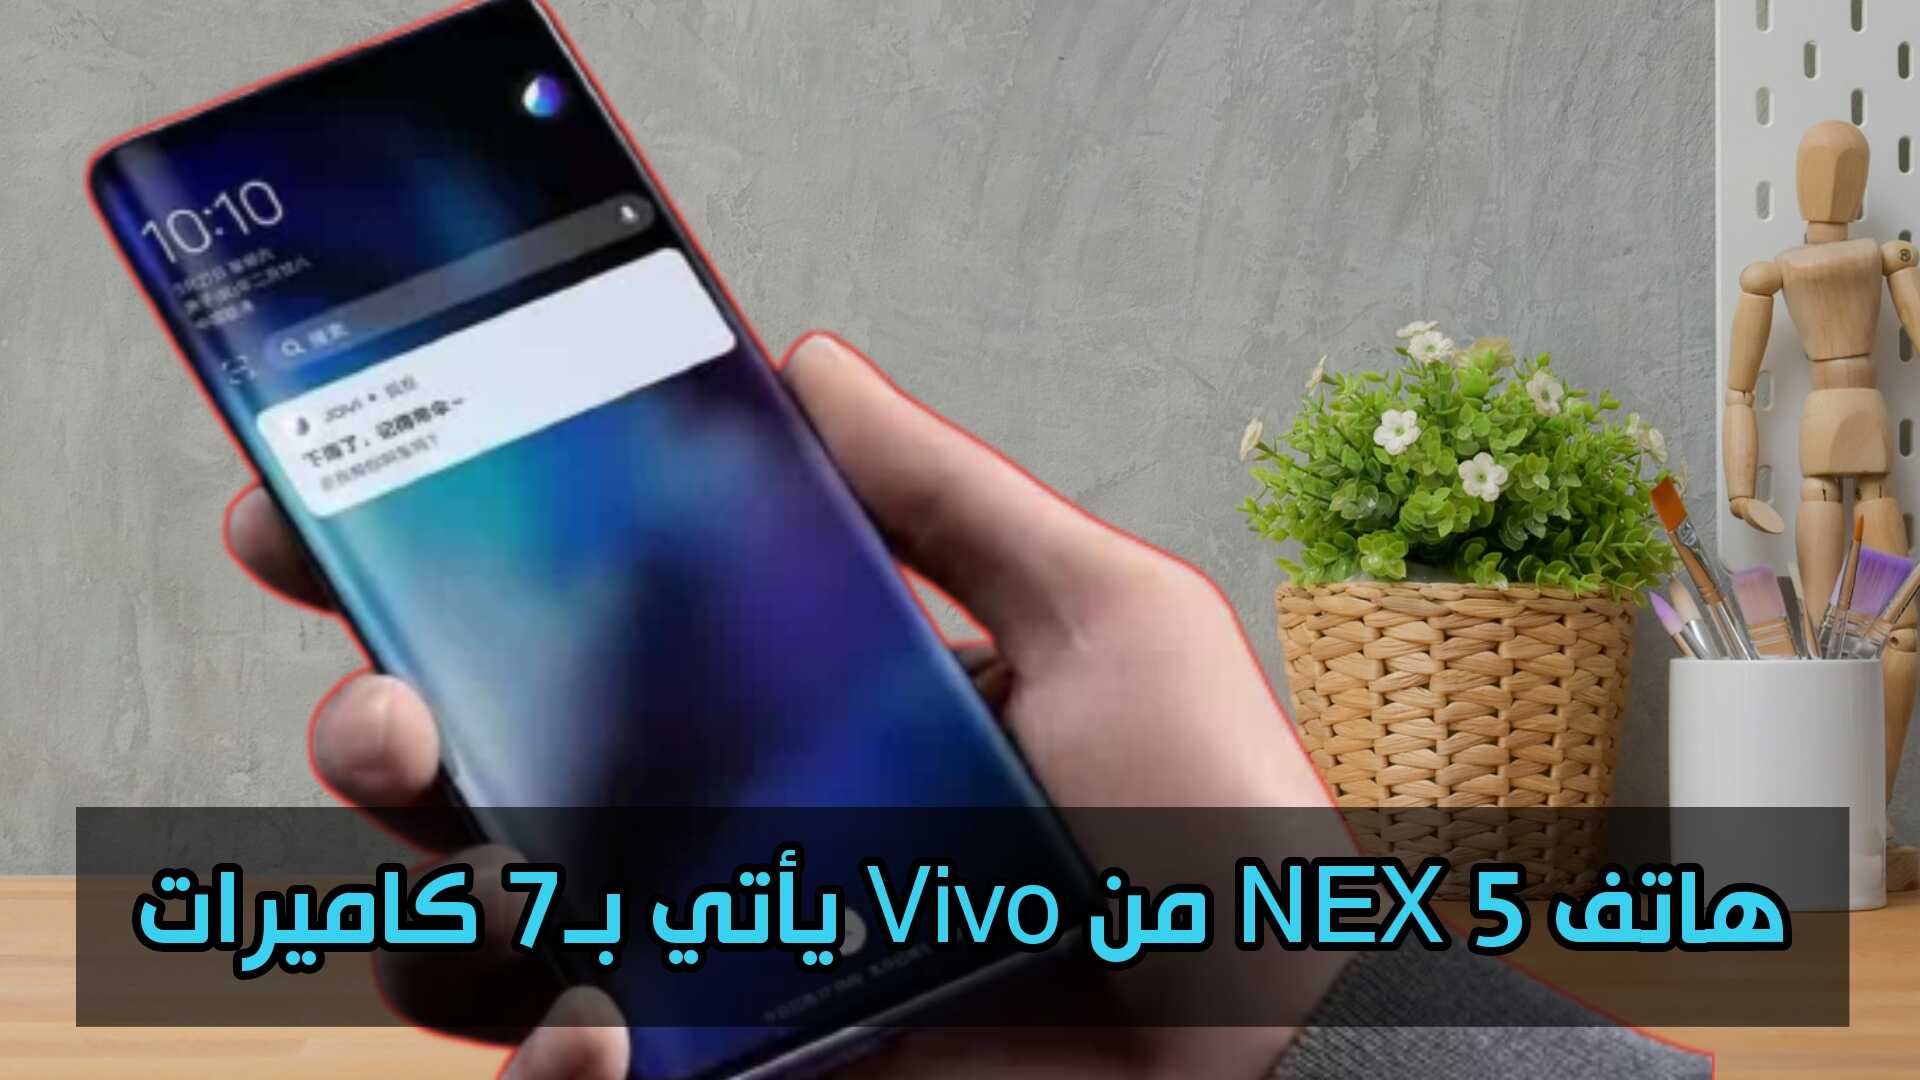 هاتف NEX 5 من Vivo يأتي بـ7 كاميرات دعونا نتعرف على موصفاتة